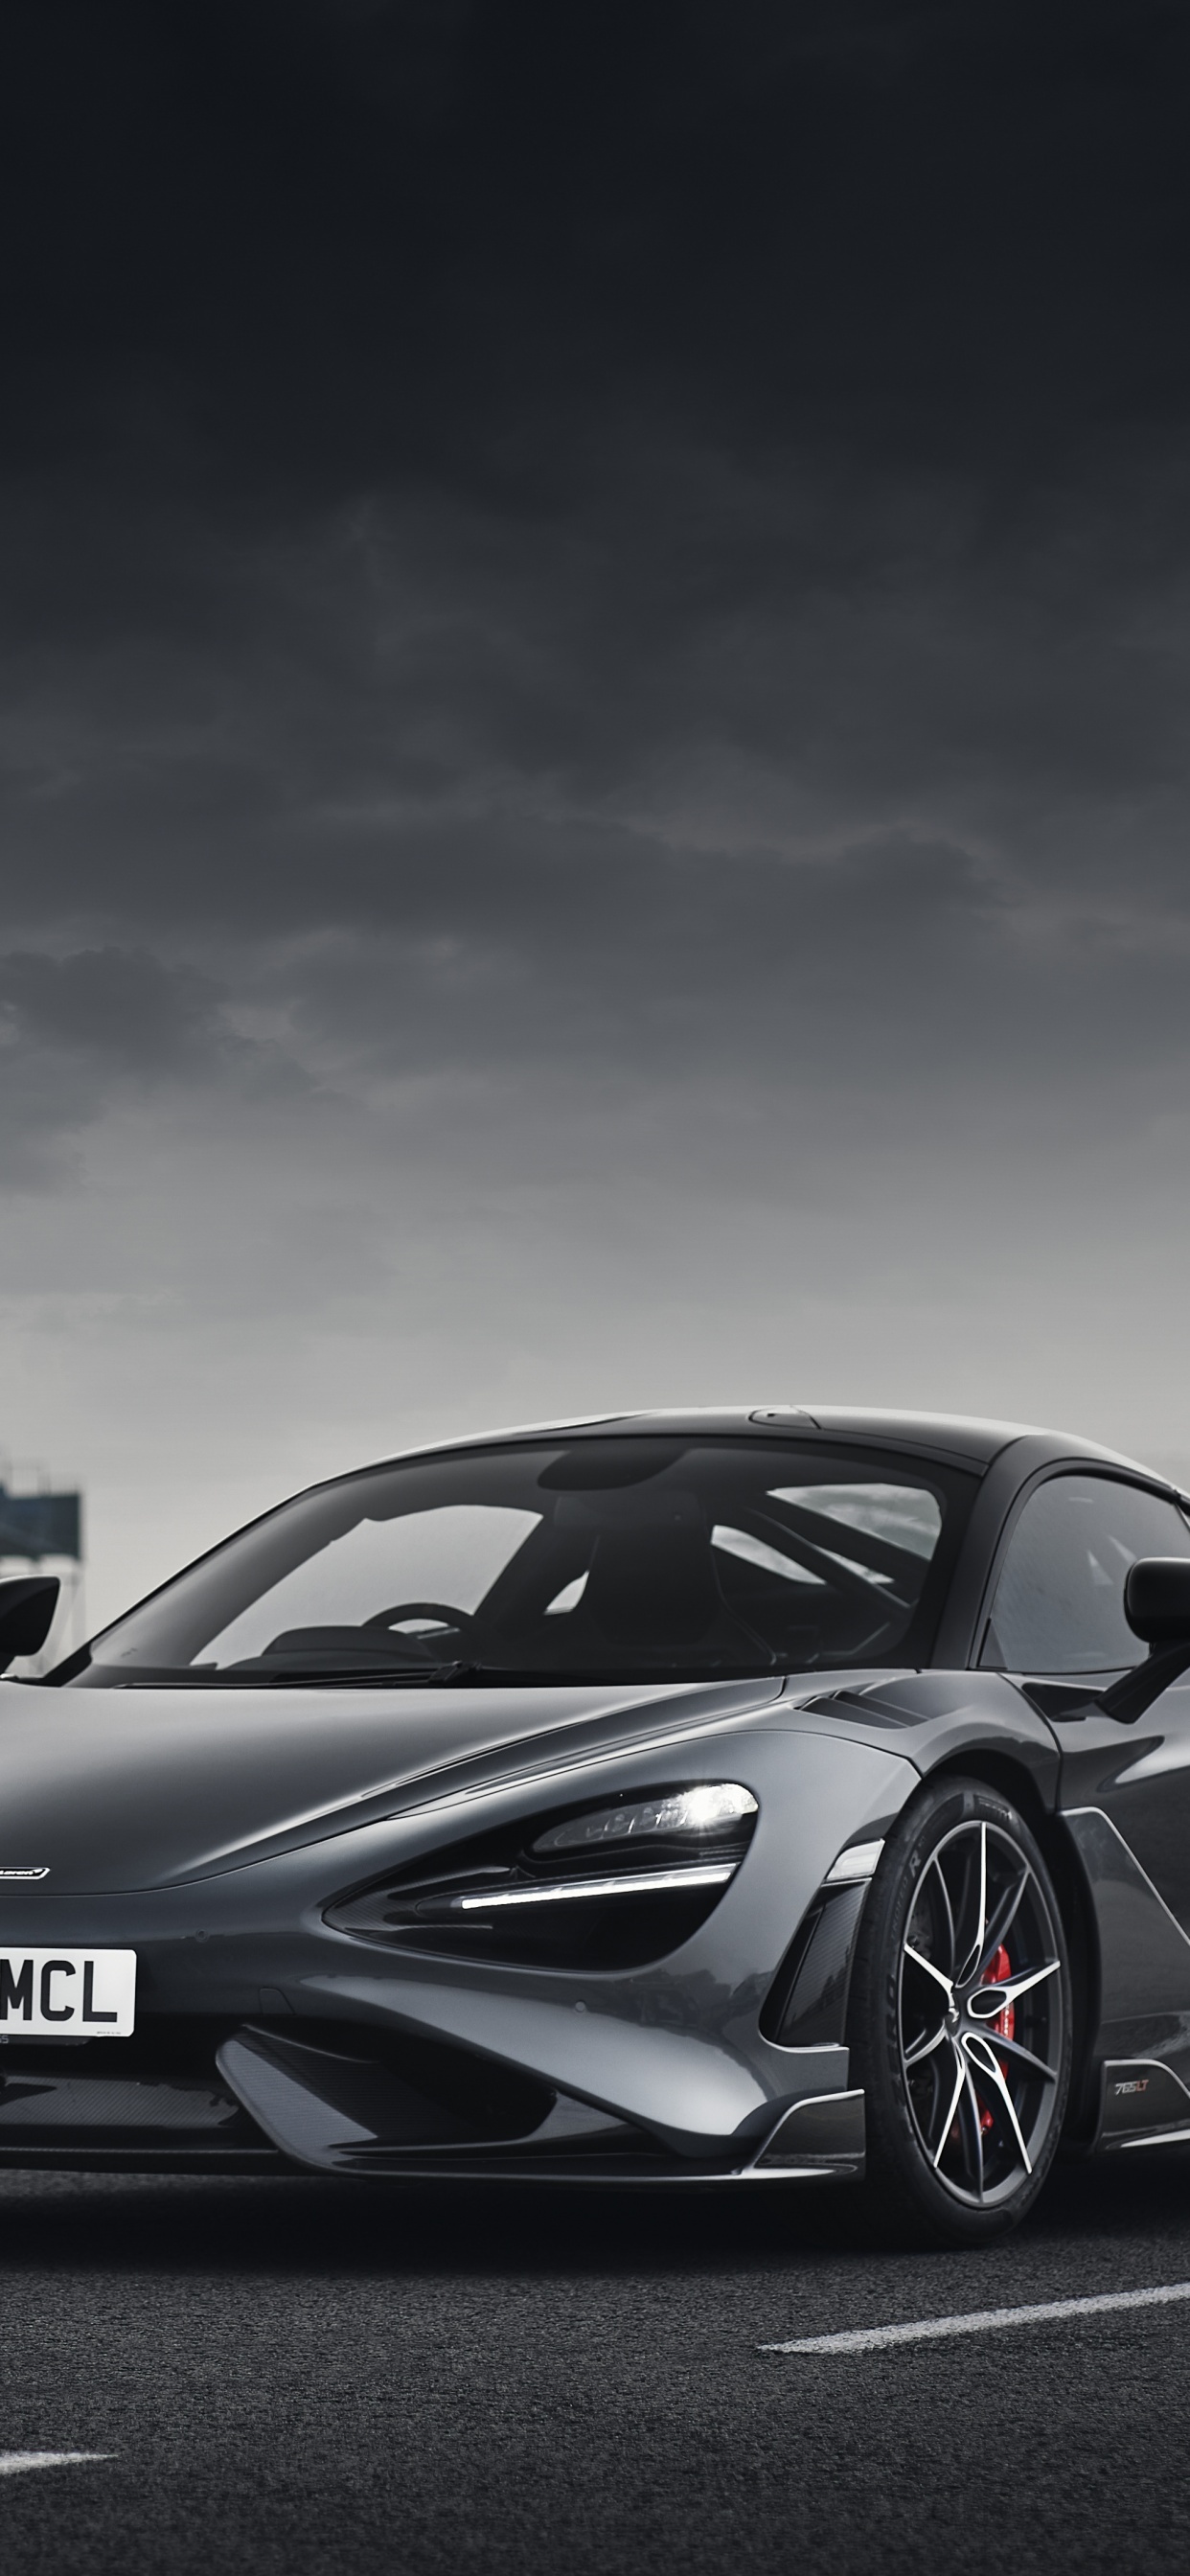 McLaren 765LT, 4K supercar wallpapers, 2021 edition, Stunning visuals, 1250x2690 HD Phone